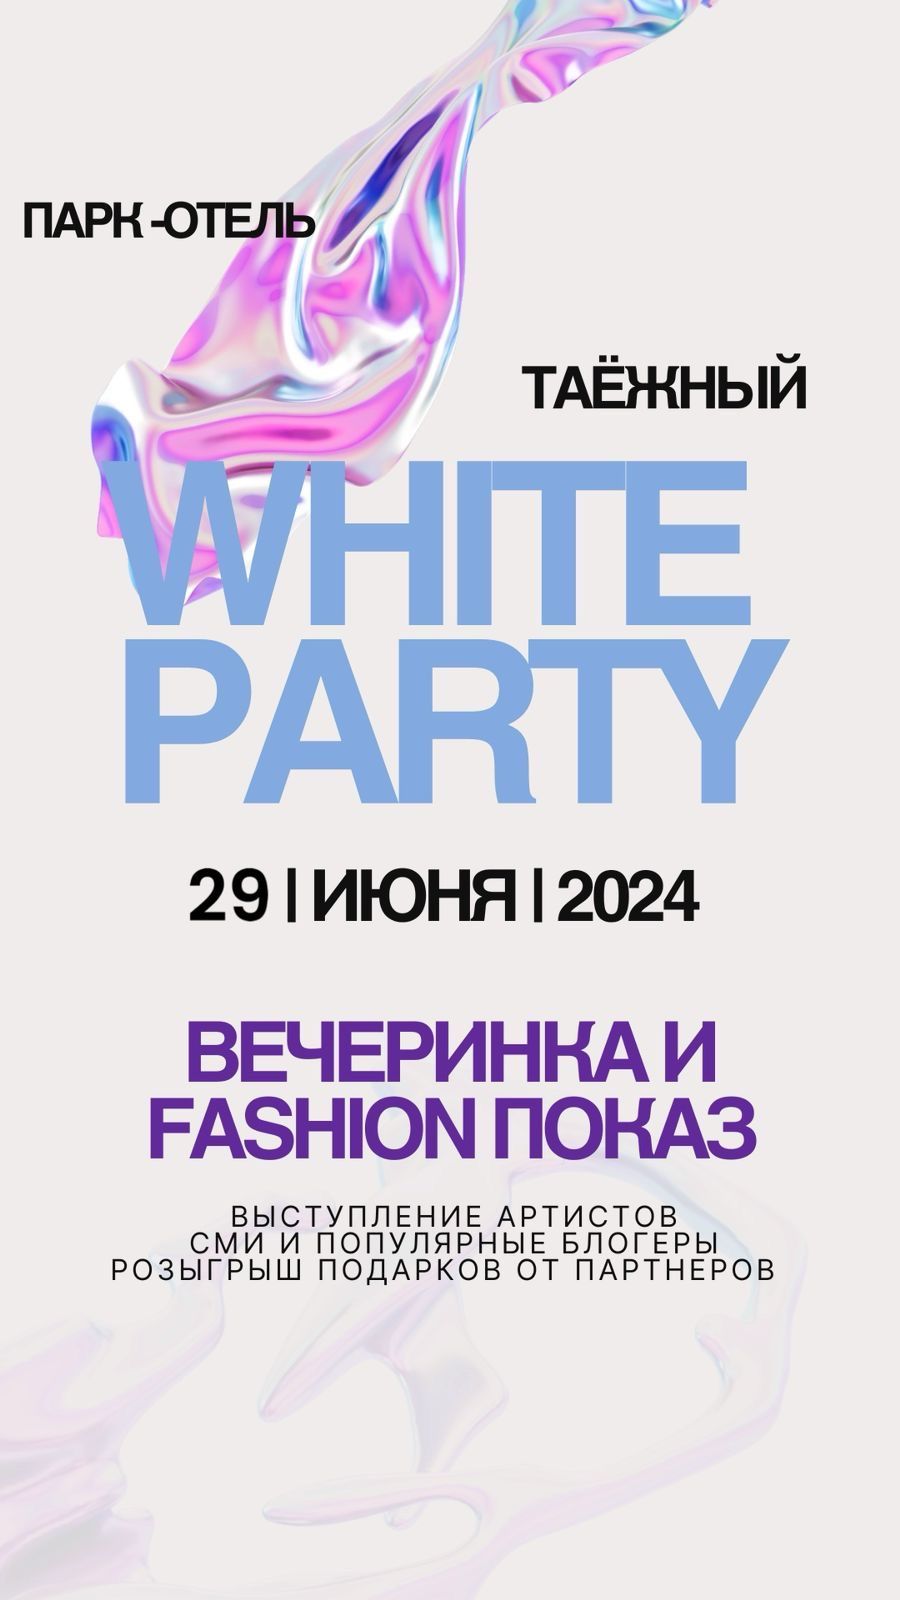 White fashion party